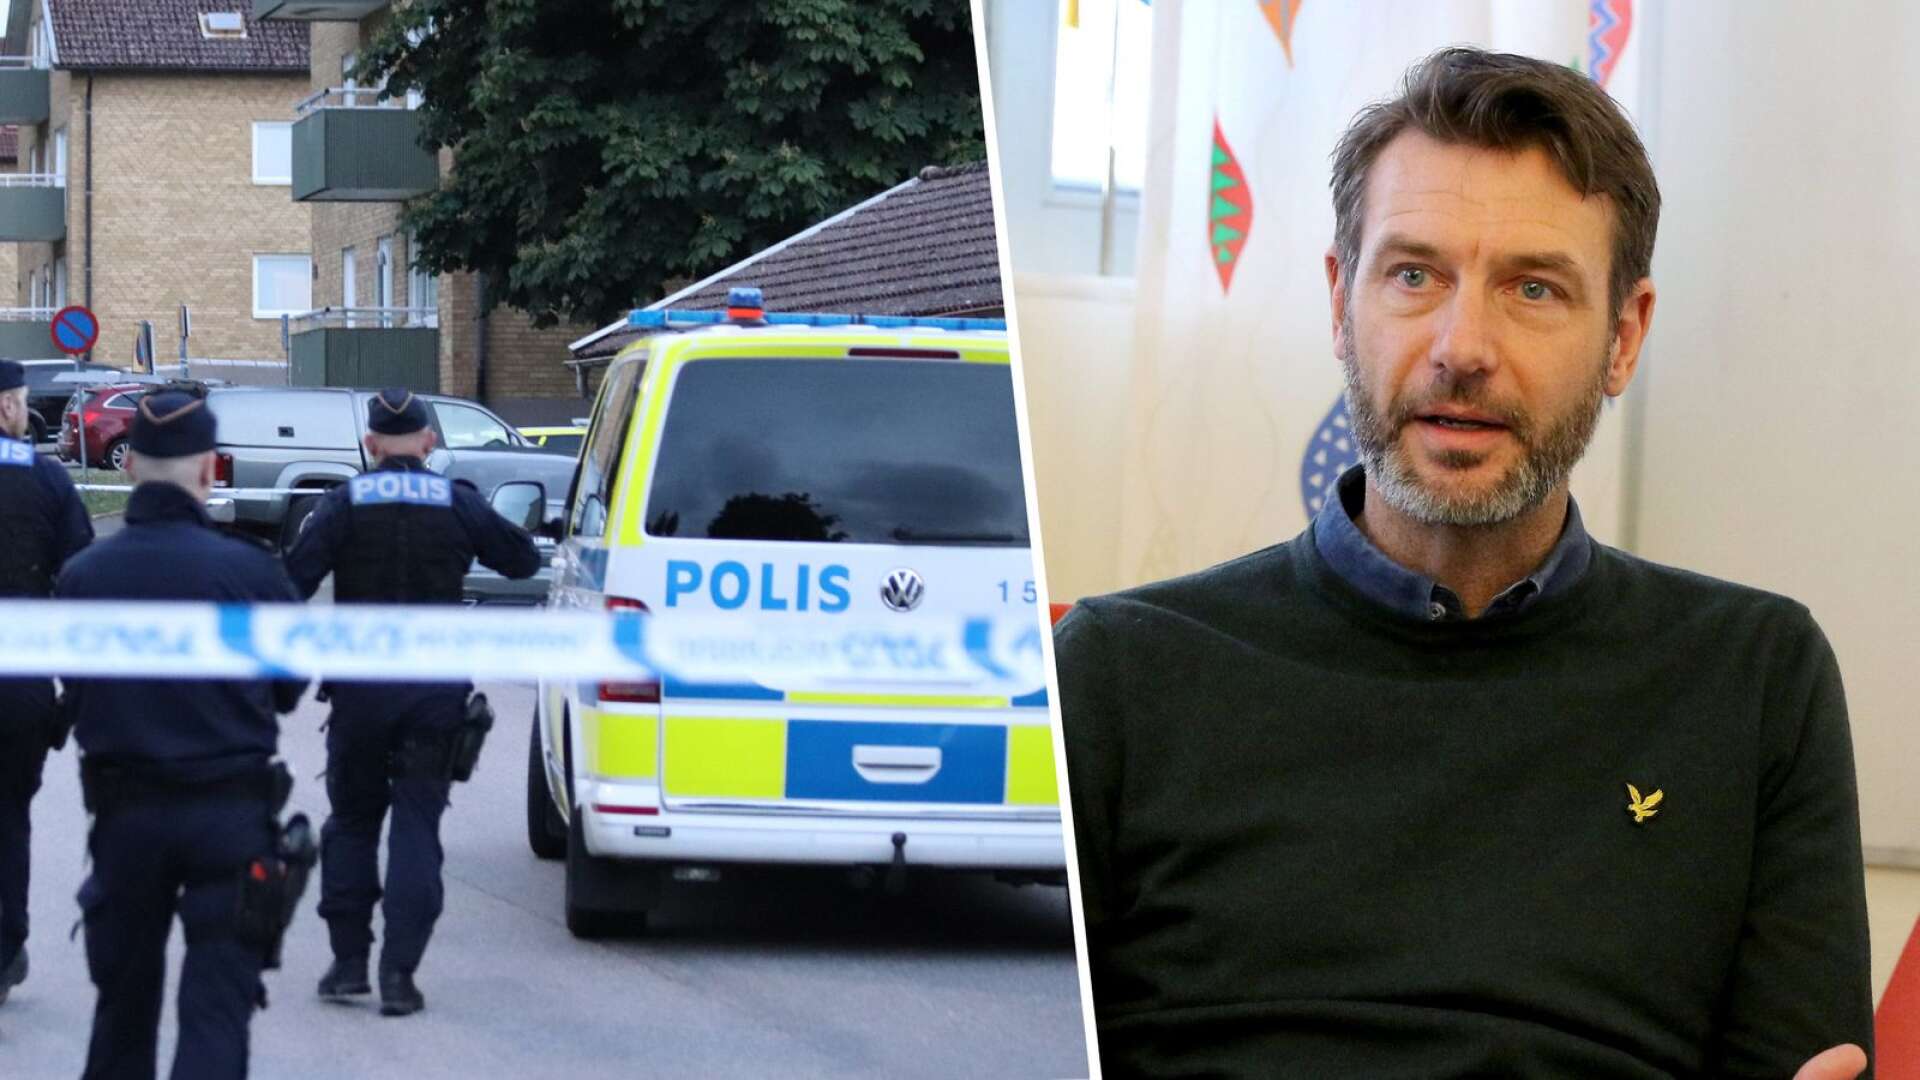 Enligt Magnus Karlsson, chef vid polisen enhet för grova brott, är den misstänkte mannen nu anhållen. ”Han kommer att begäras häktad under dagen”, säger Karlsson.